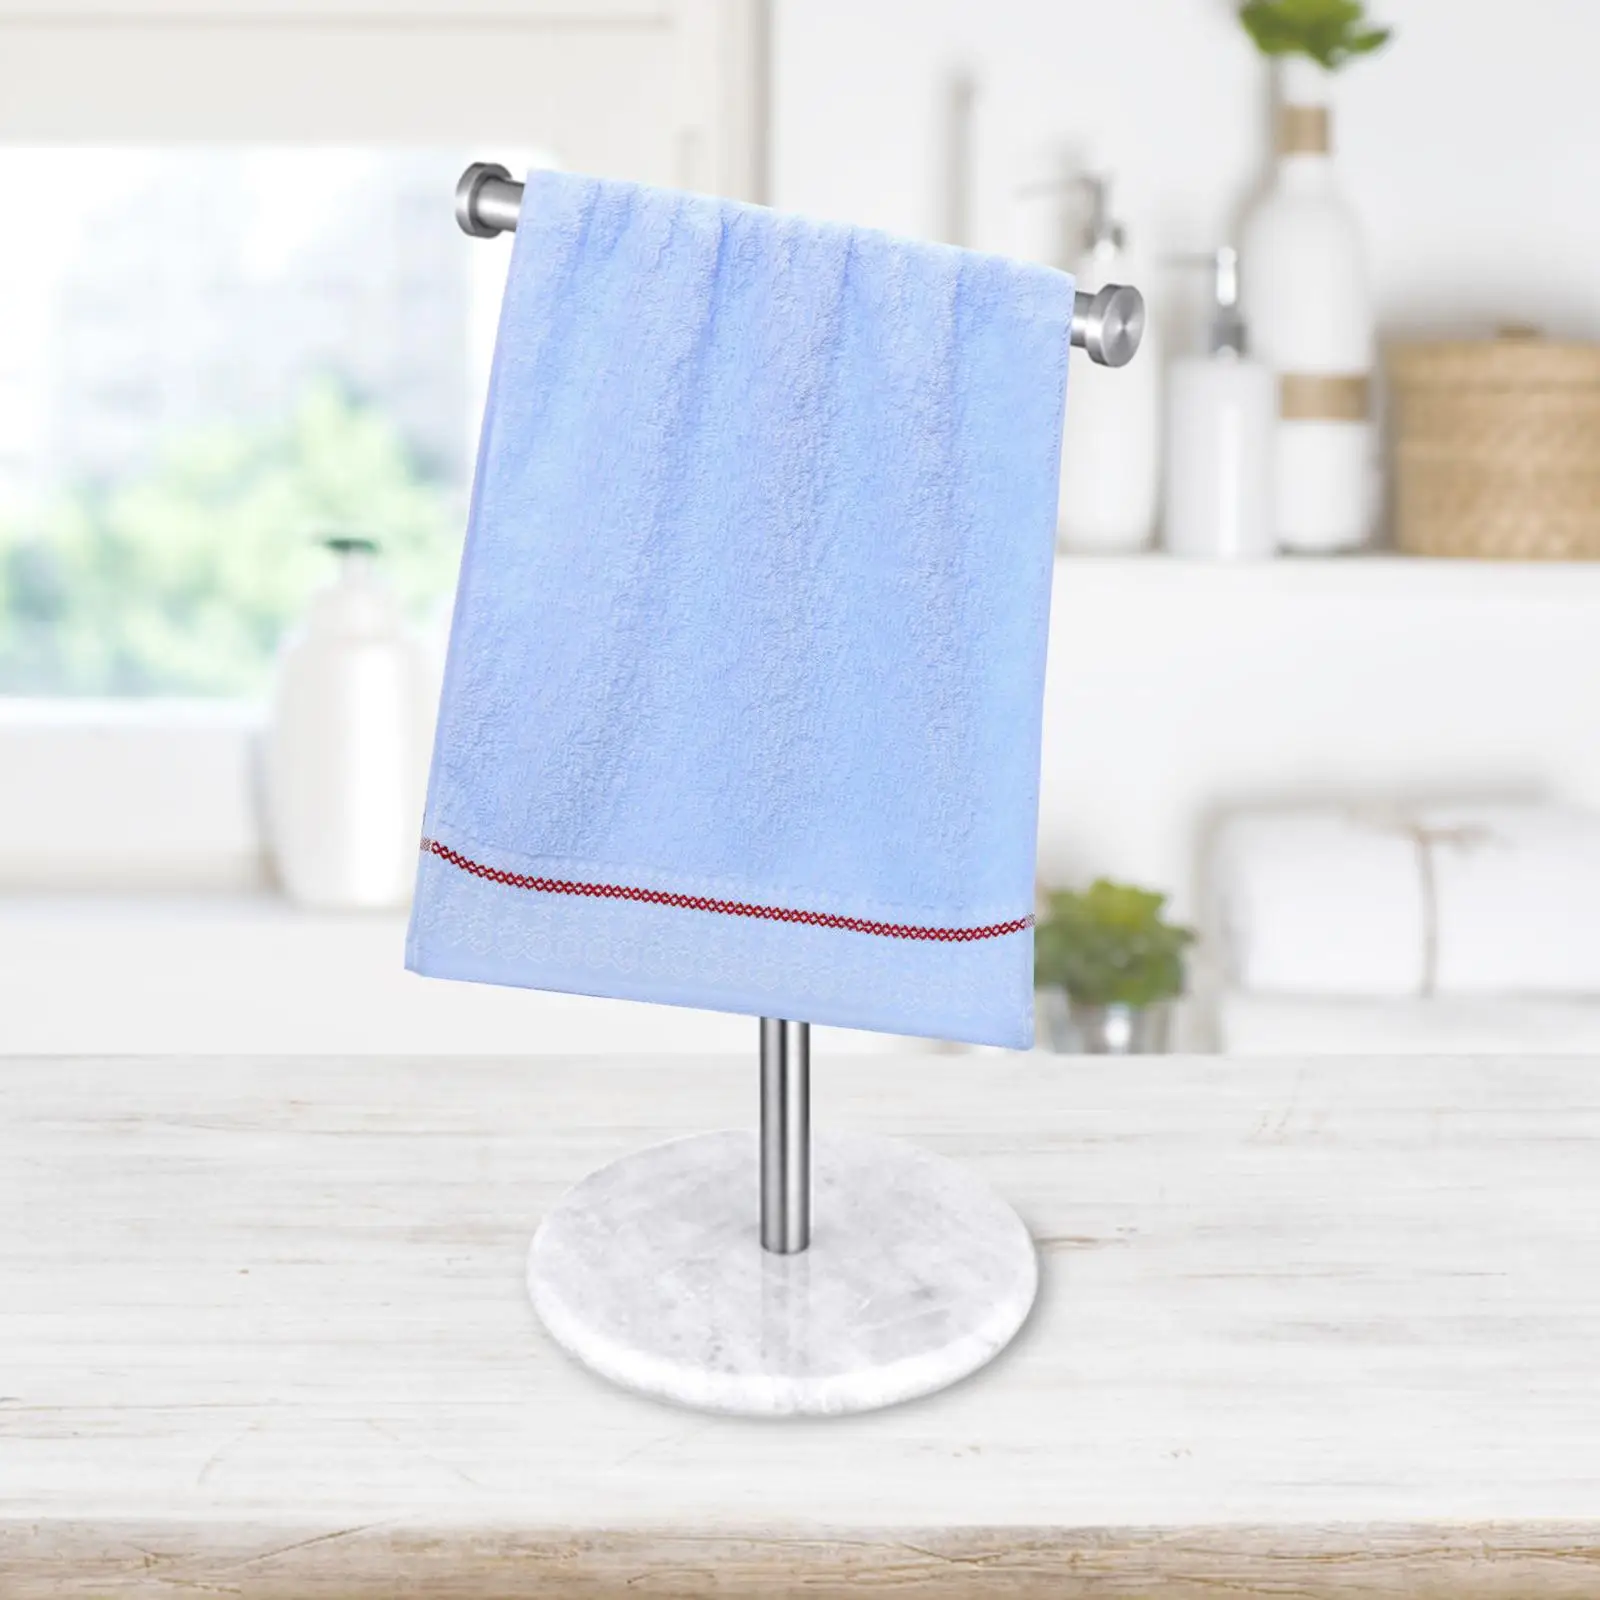 Towel Bar Rack Stand Towel Bar Towel Bar Rack Hand Towel Hanger Bath Hand Towel Holder Stand for Vanity Countertop Kitchen